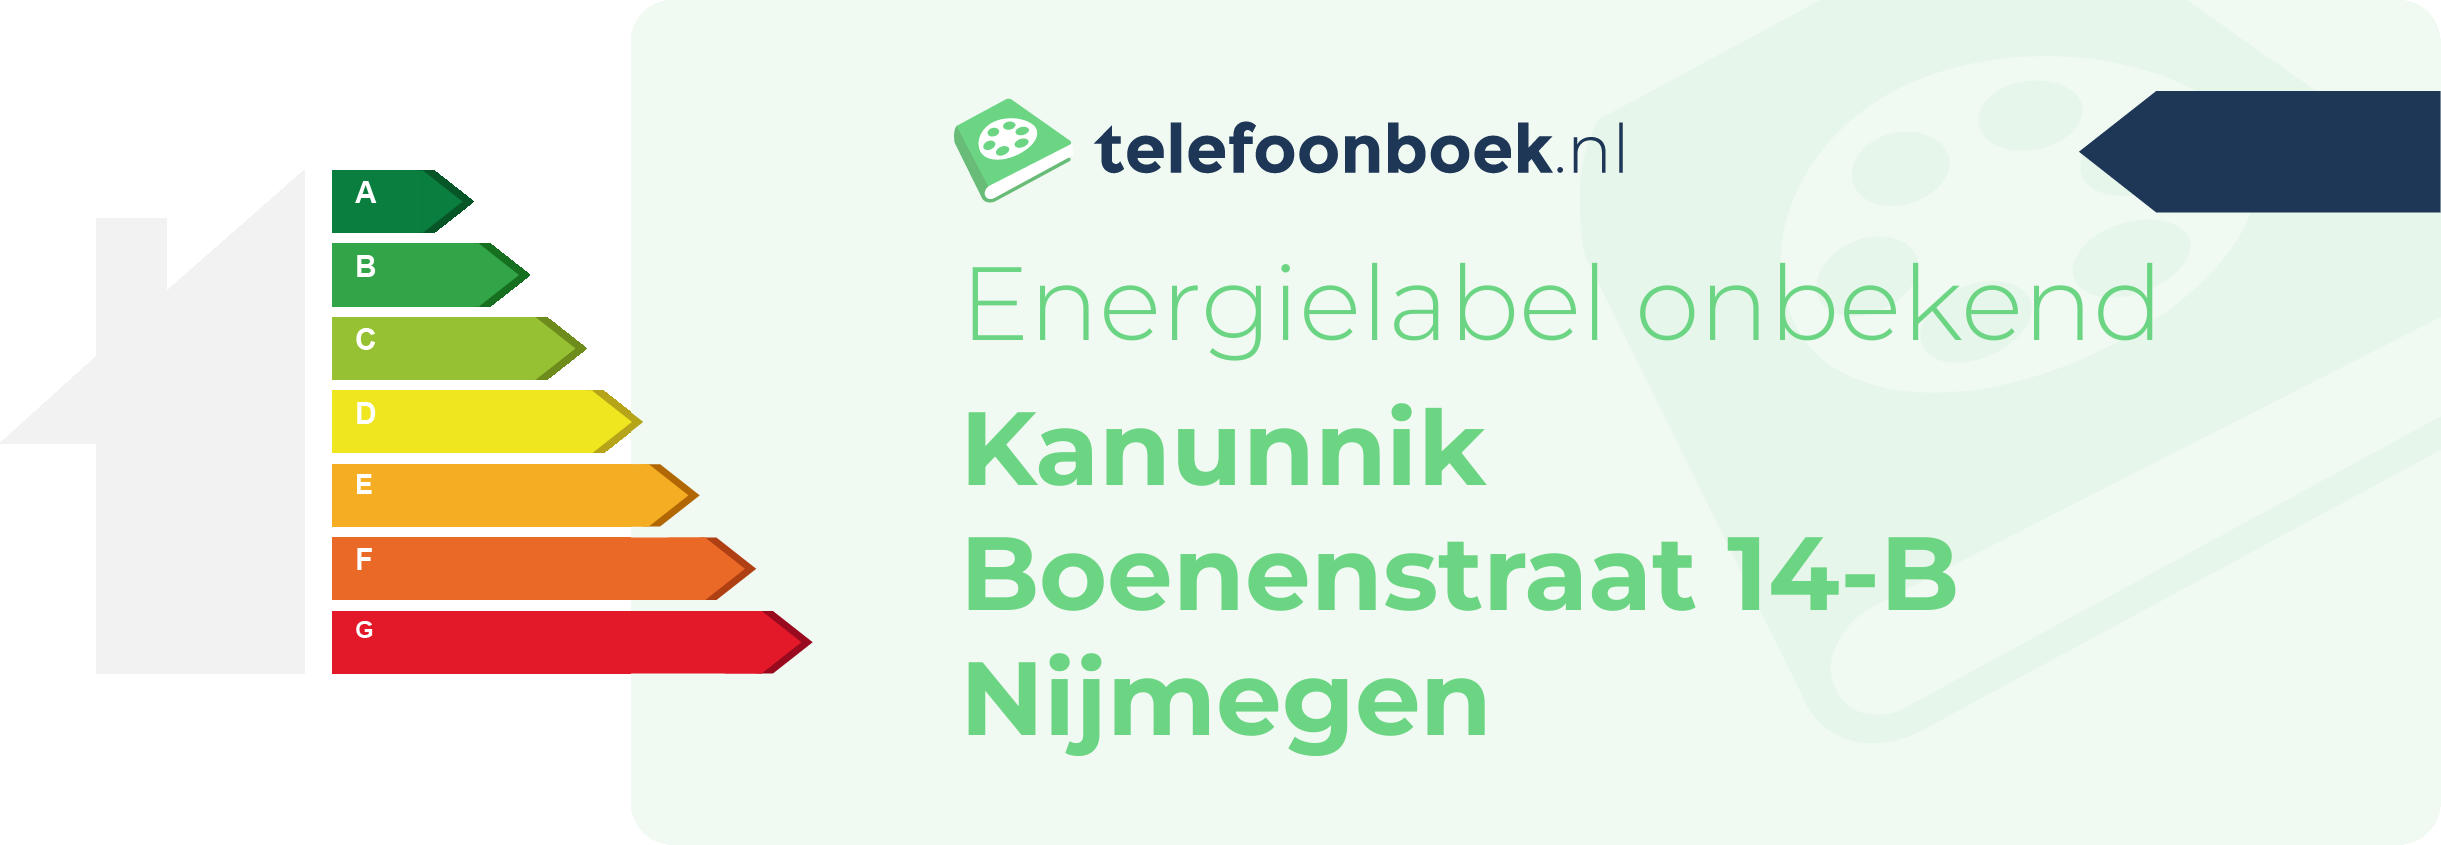 Energielabel Kanunnik Boenenstraat 14-B Nijmegen